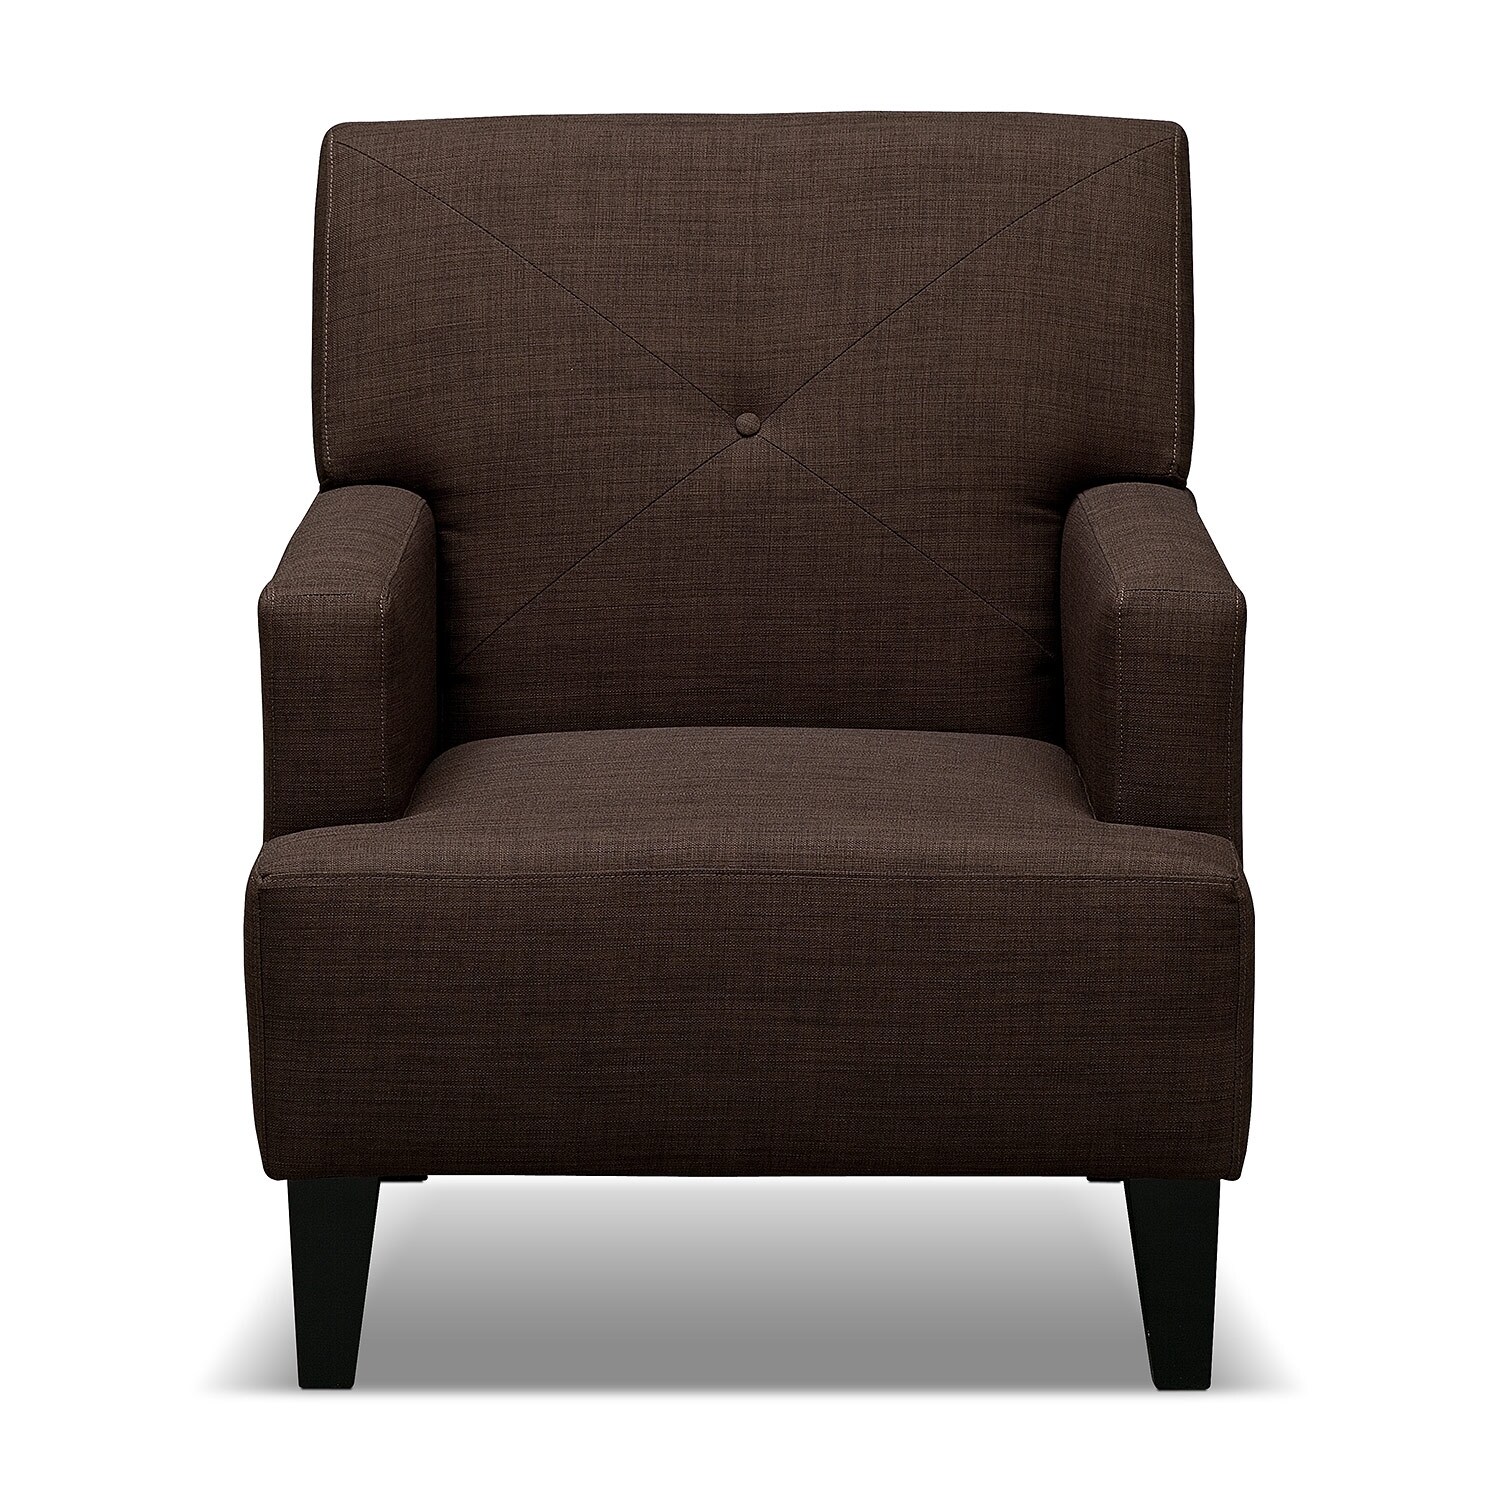 Avalon Accent Chair - Espresso | Value City Furniture